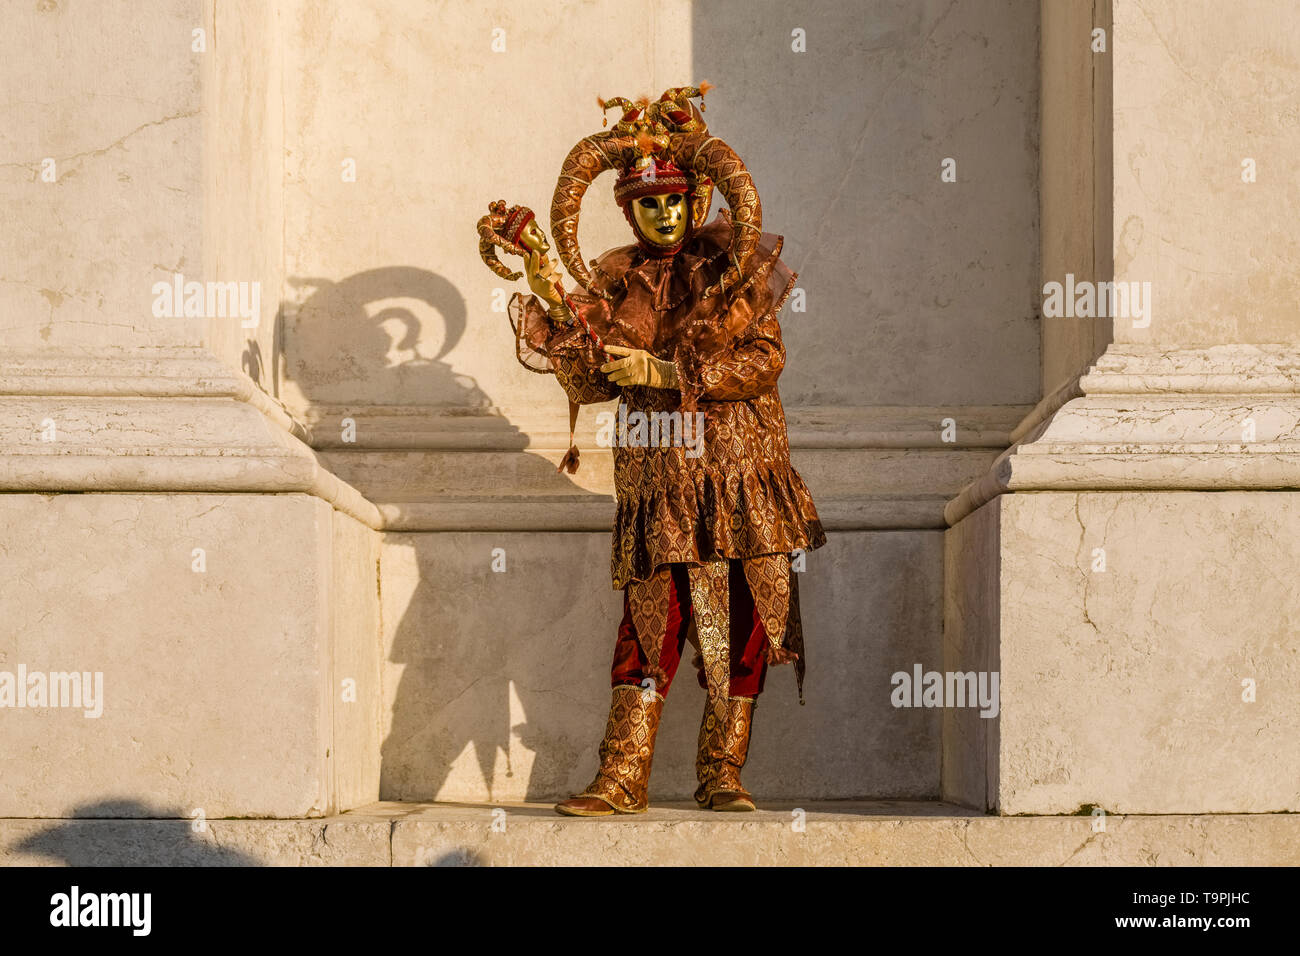 Un masculin persona mascherato in una bella creative costume di Arlecchino, posa sull'isola di San Giorgio di Maggiore, celebra il Carnevale Veneziano Foto Stock